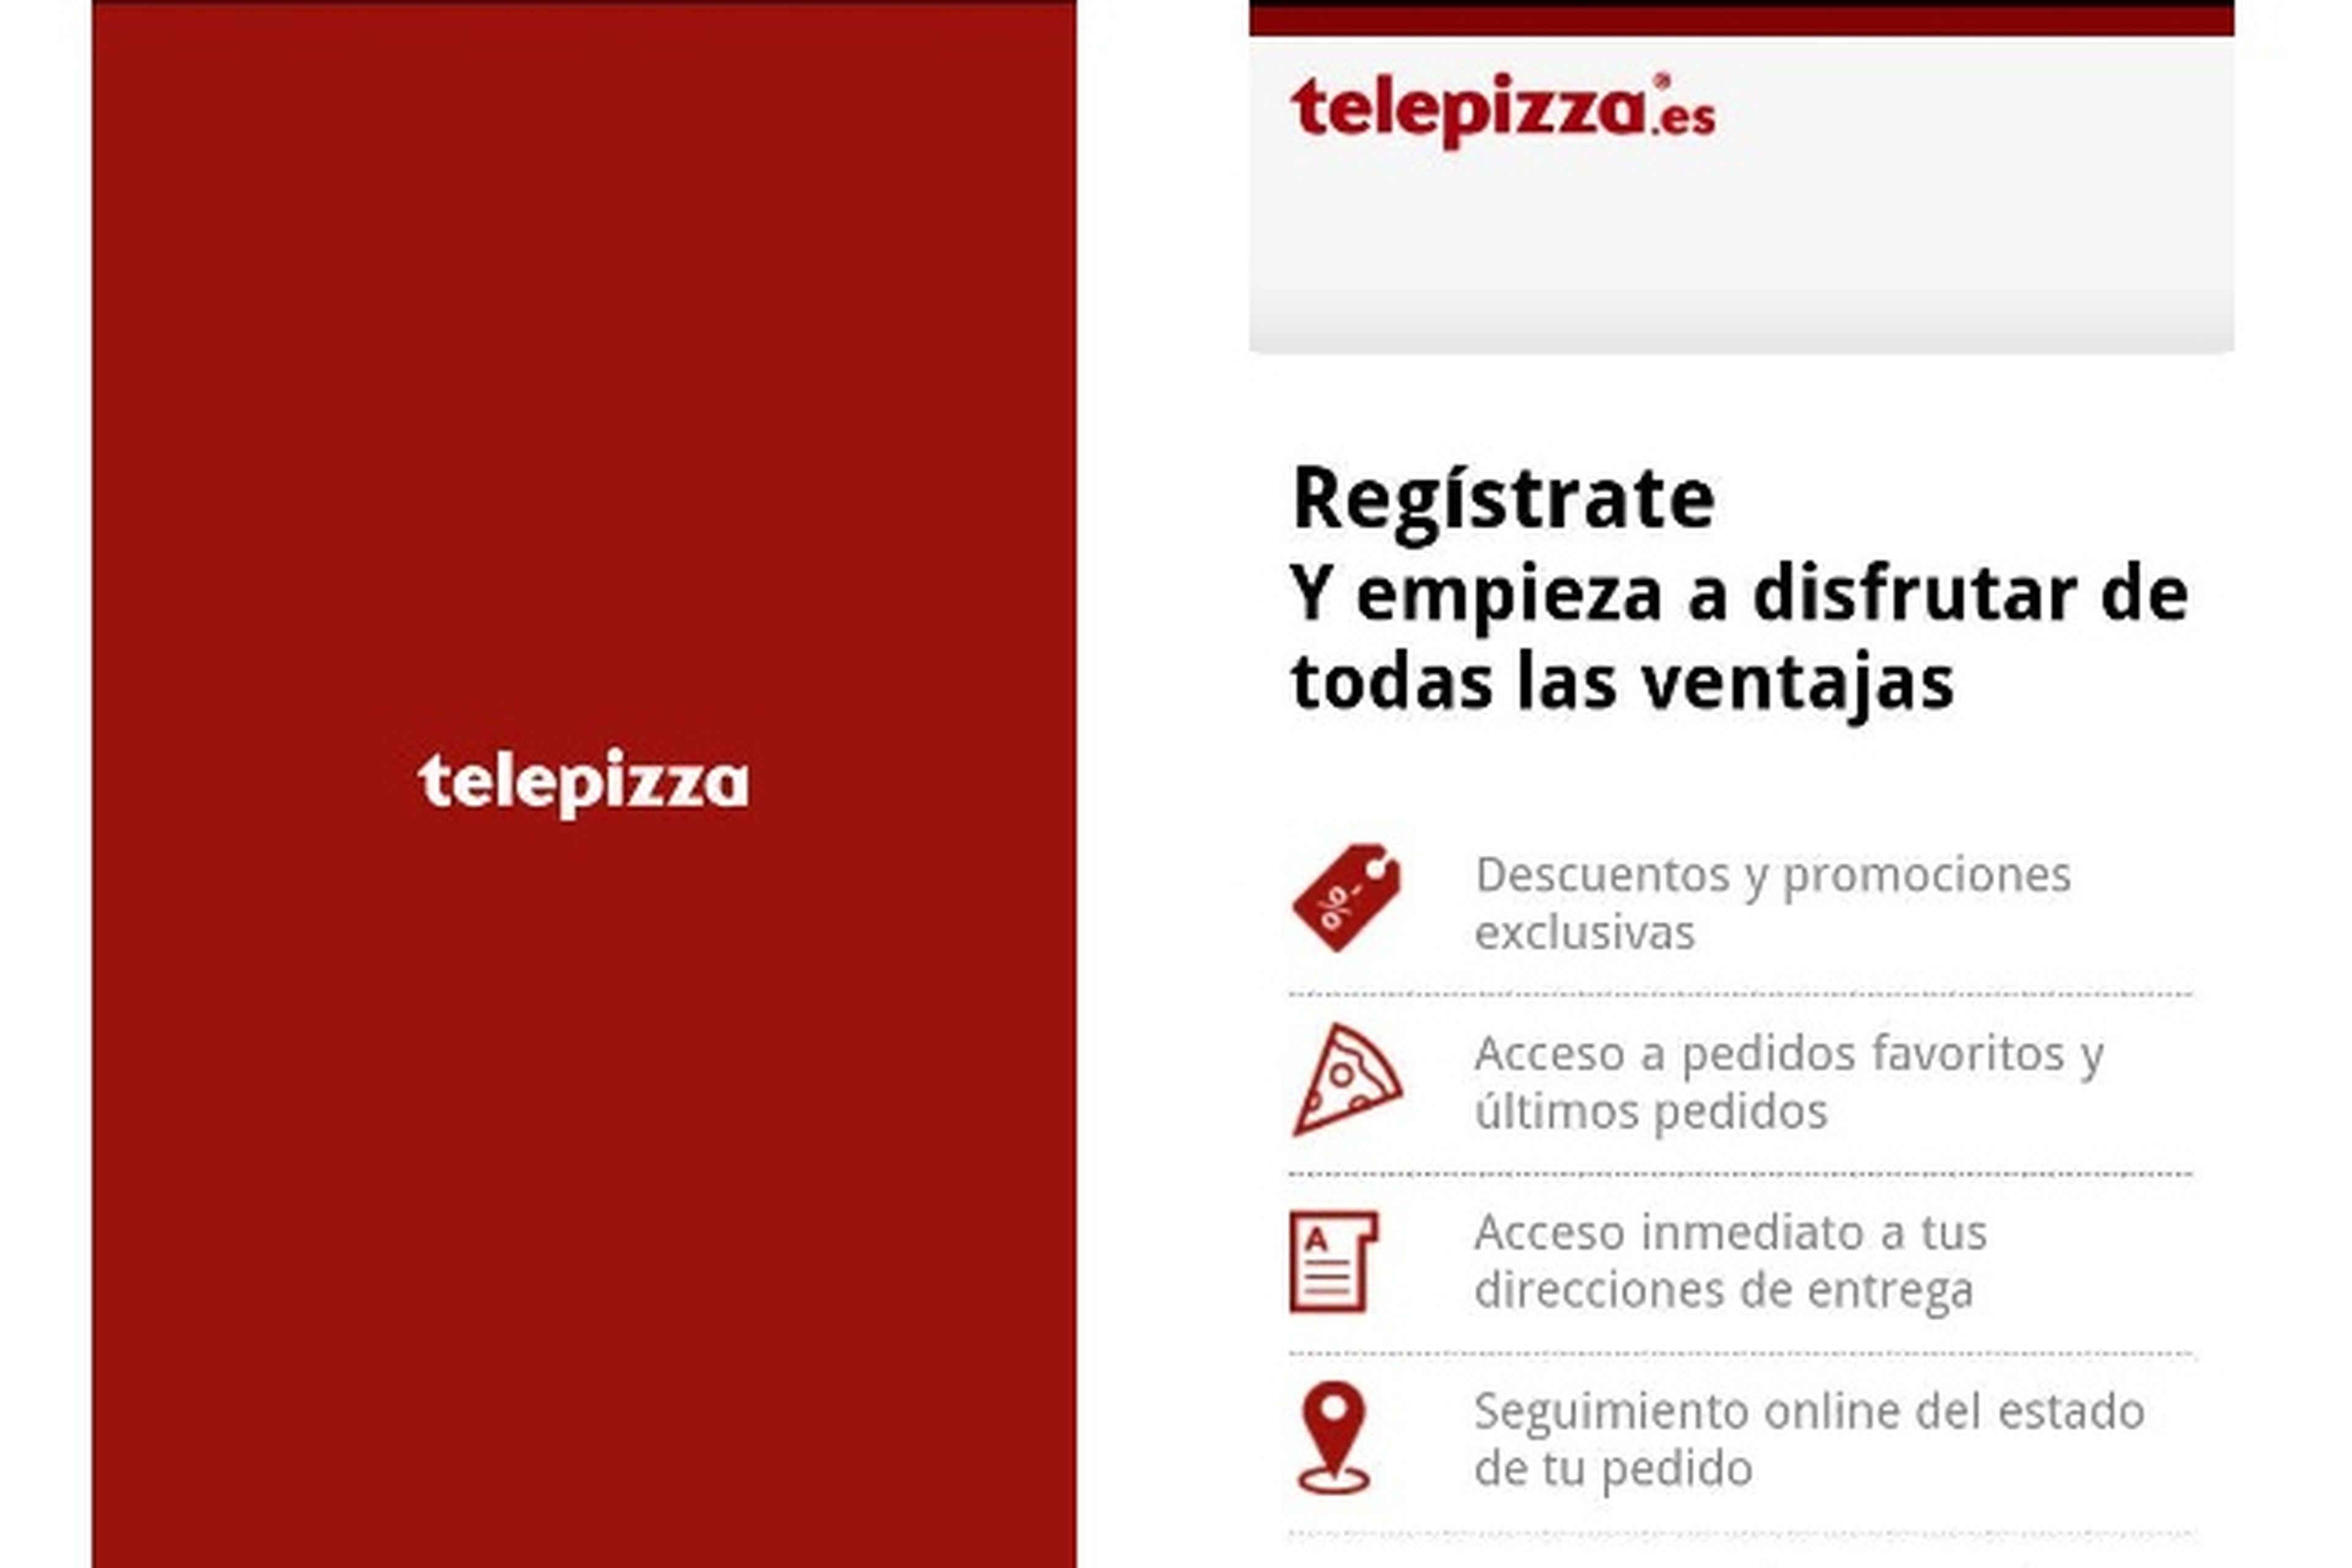 App Telepizza 2.0